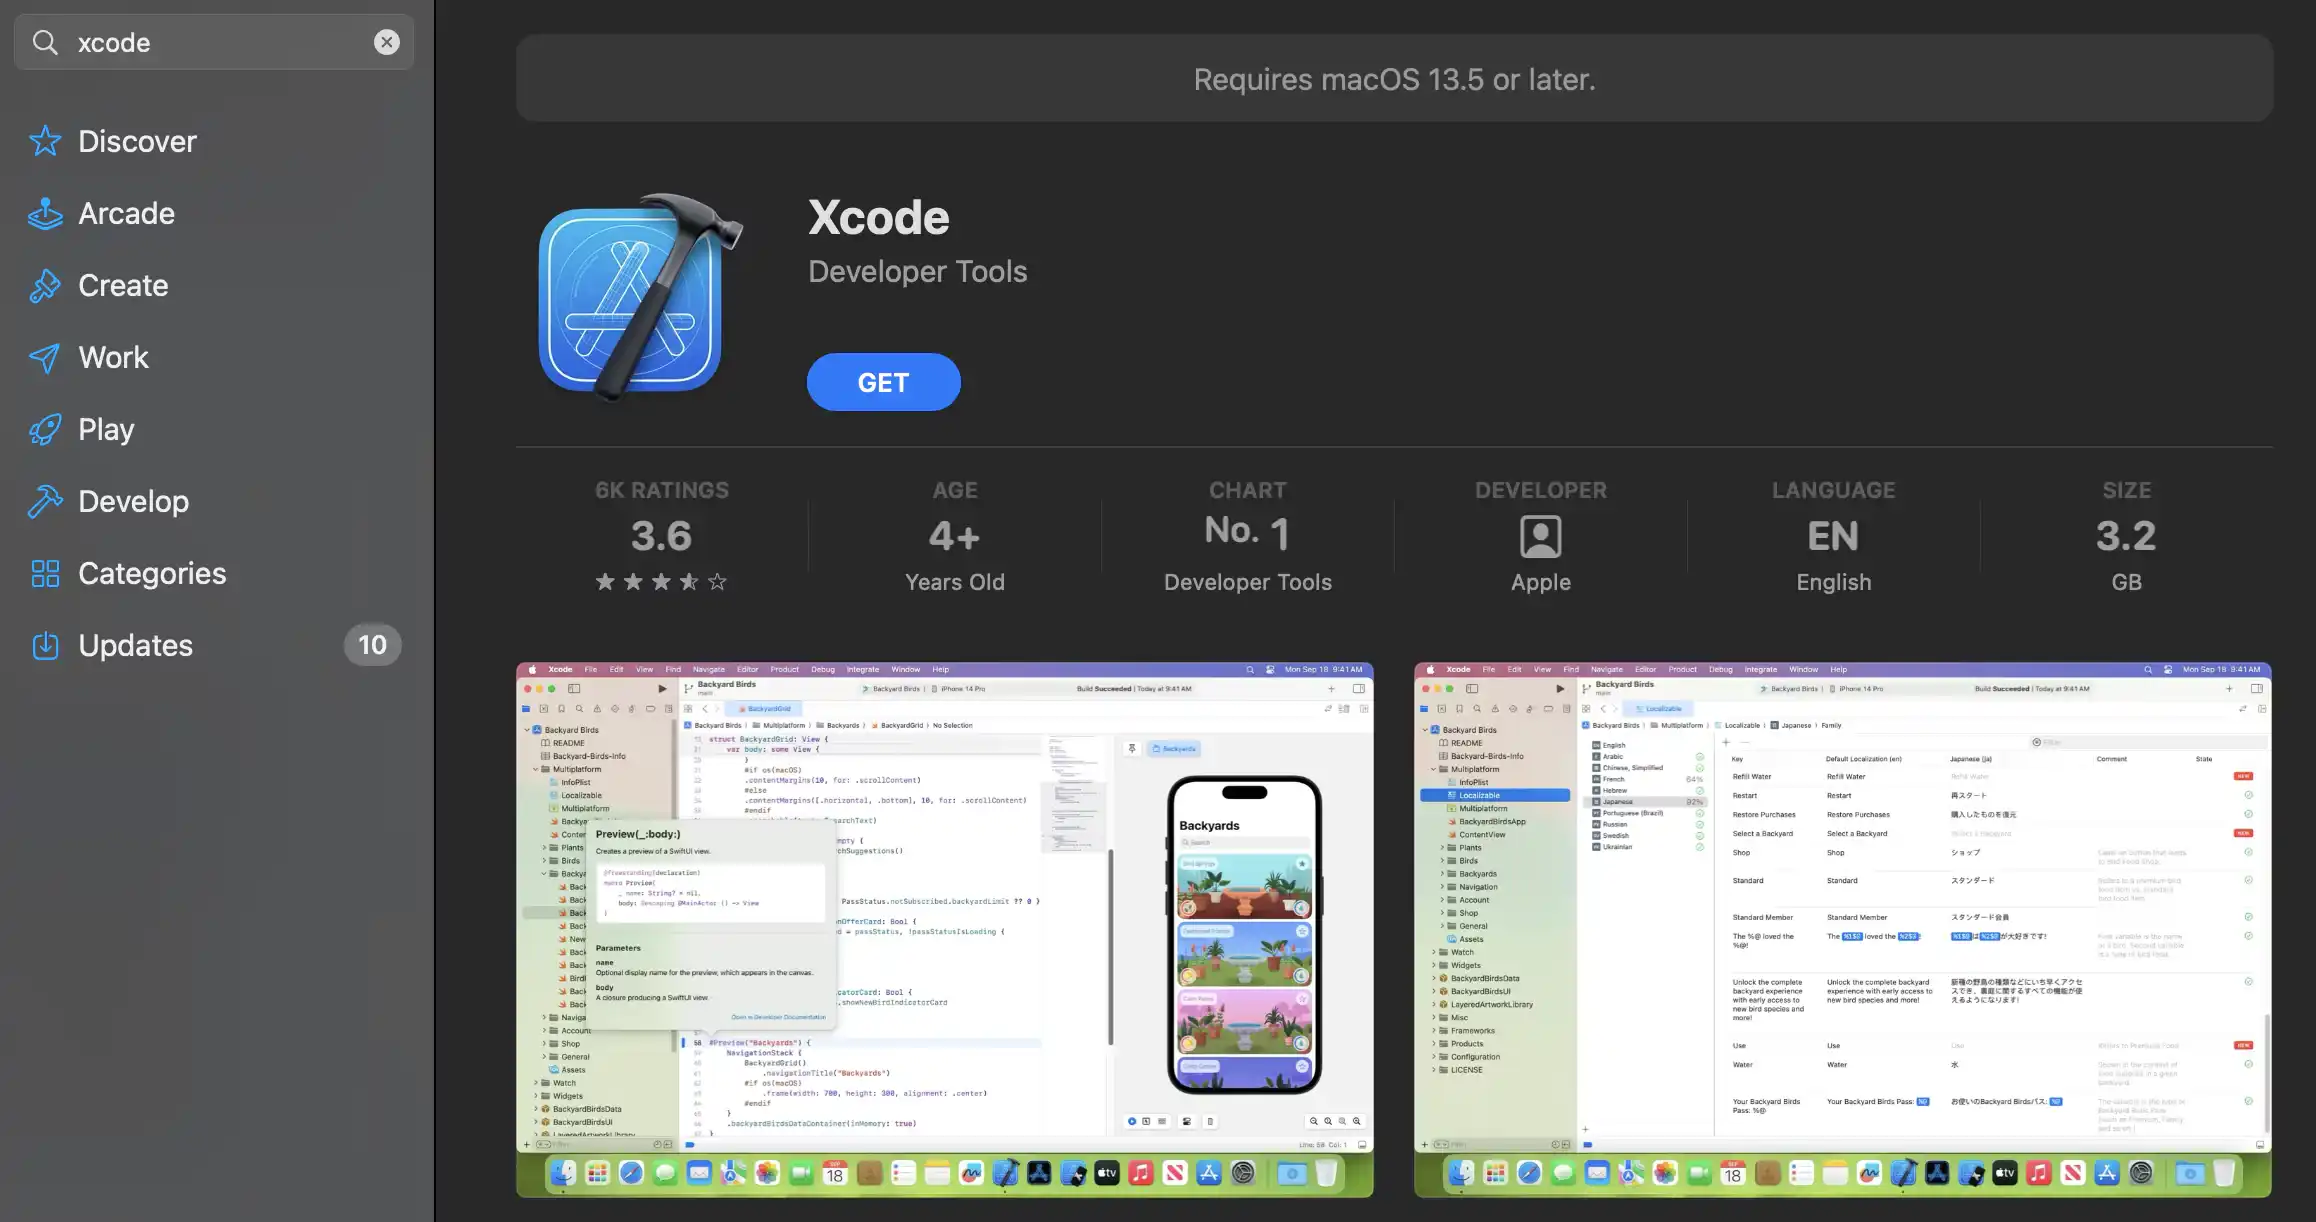 Xcode installer will start downloading